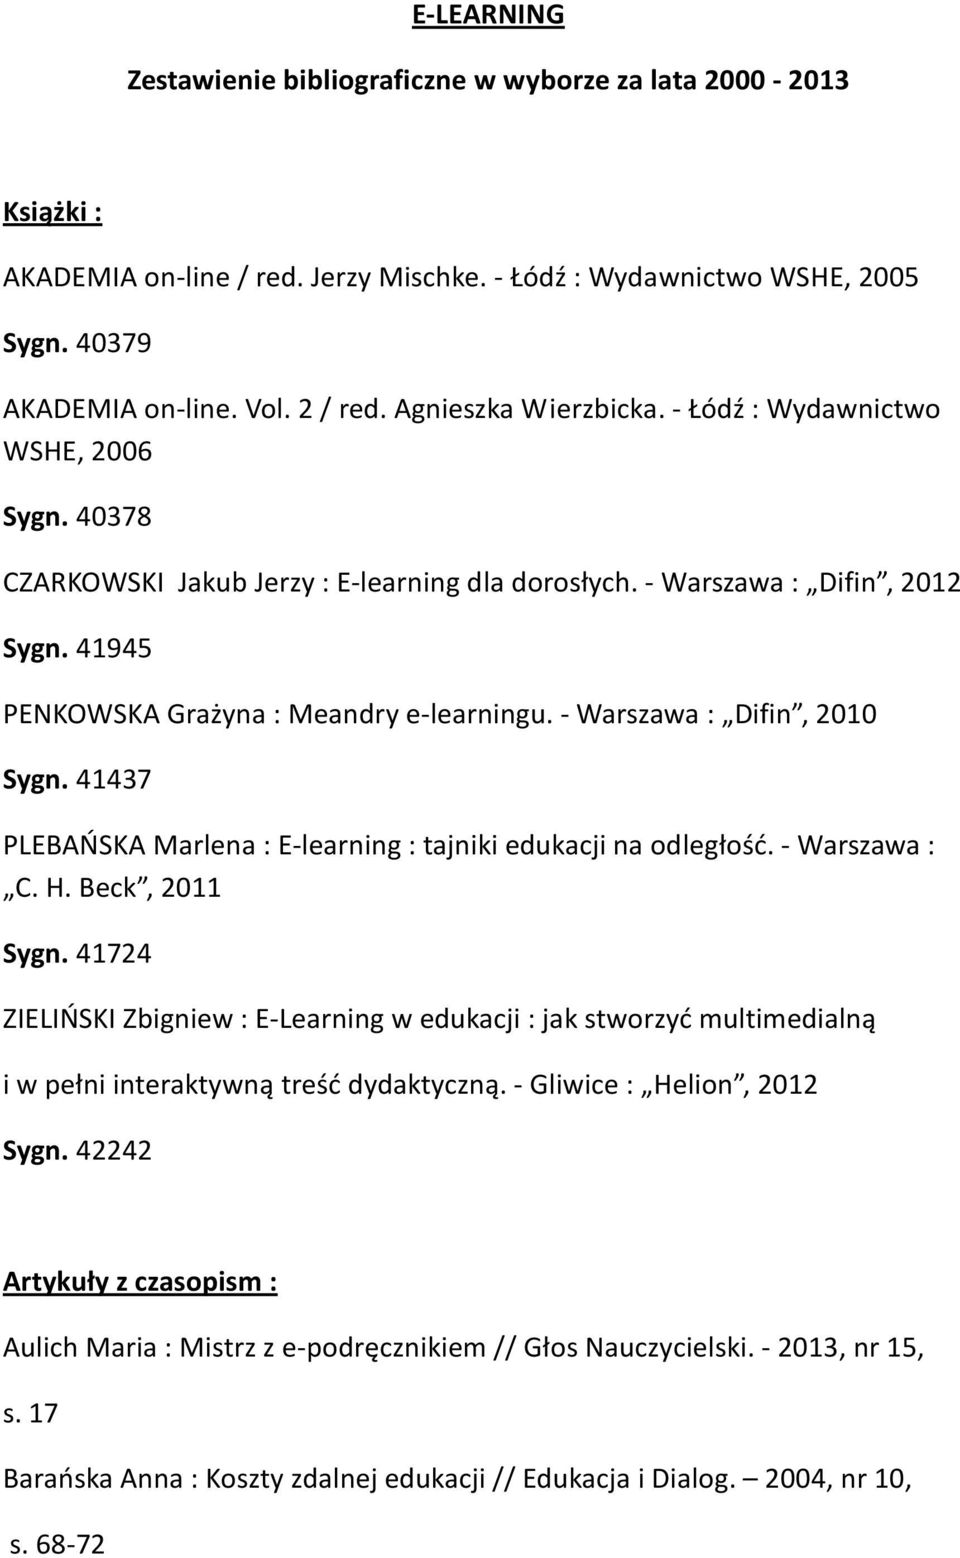 - Warszawa : Difin, 2010 Sygn. 41437 PLEBAŃSKA Marlena : E-learning : tajniki edukacji na odległość. - Warszawa : C. H. Beck, 2011 Sygn.